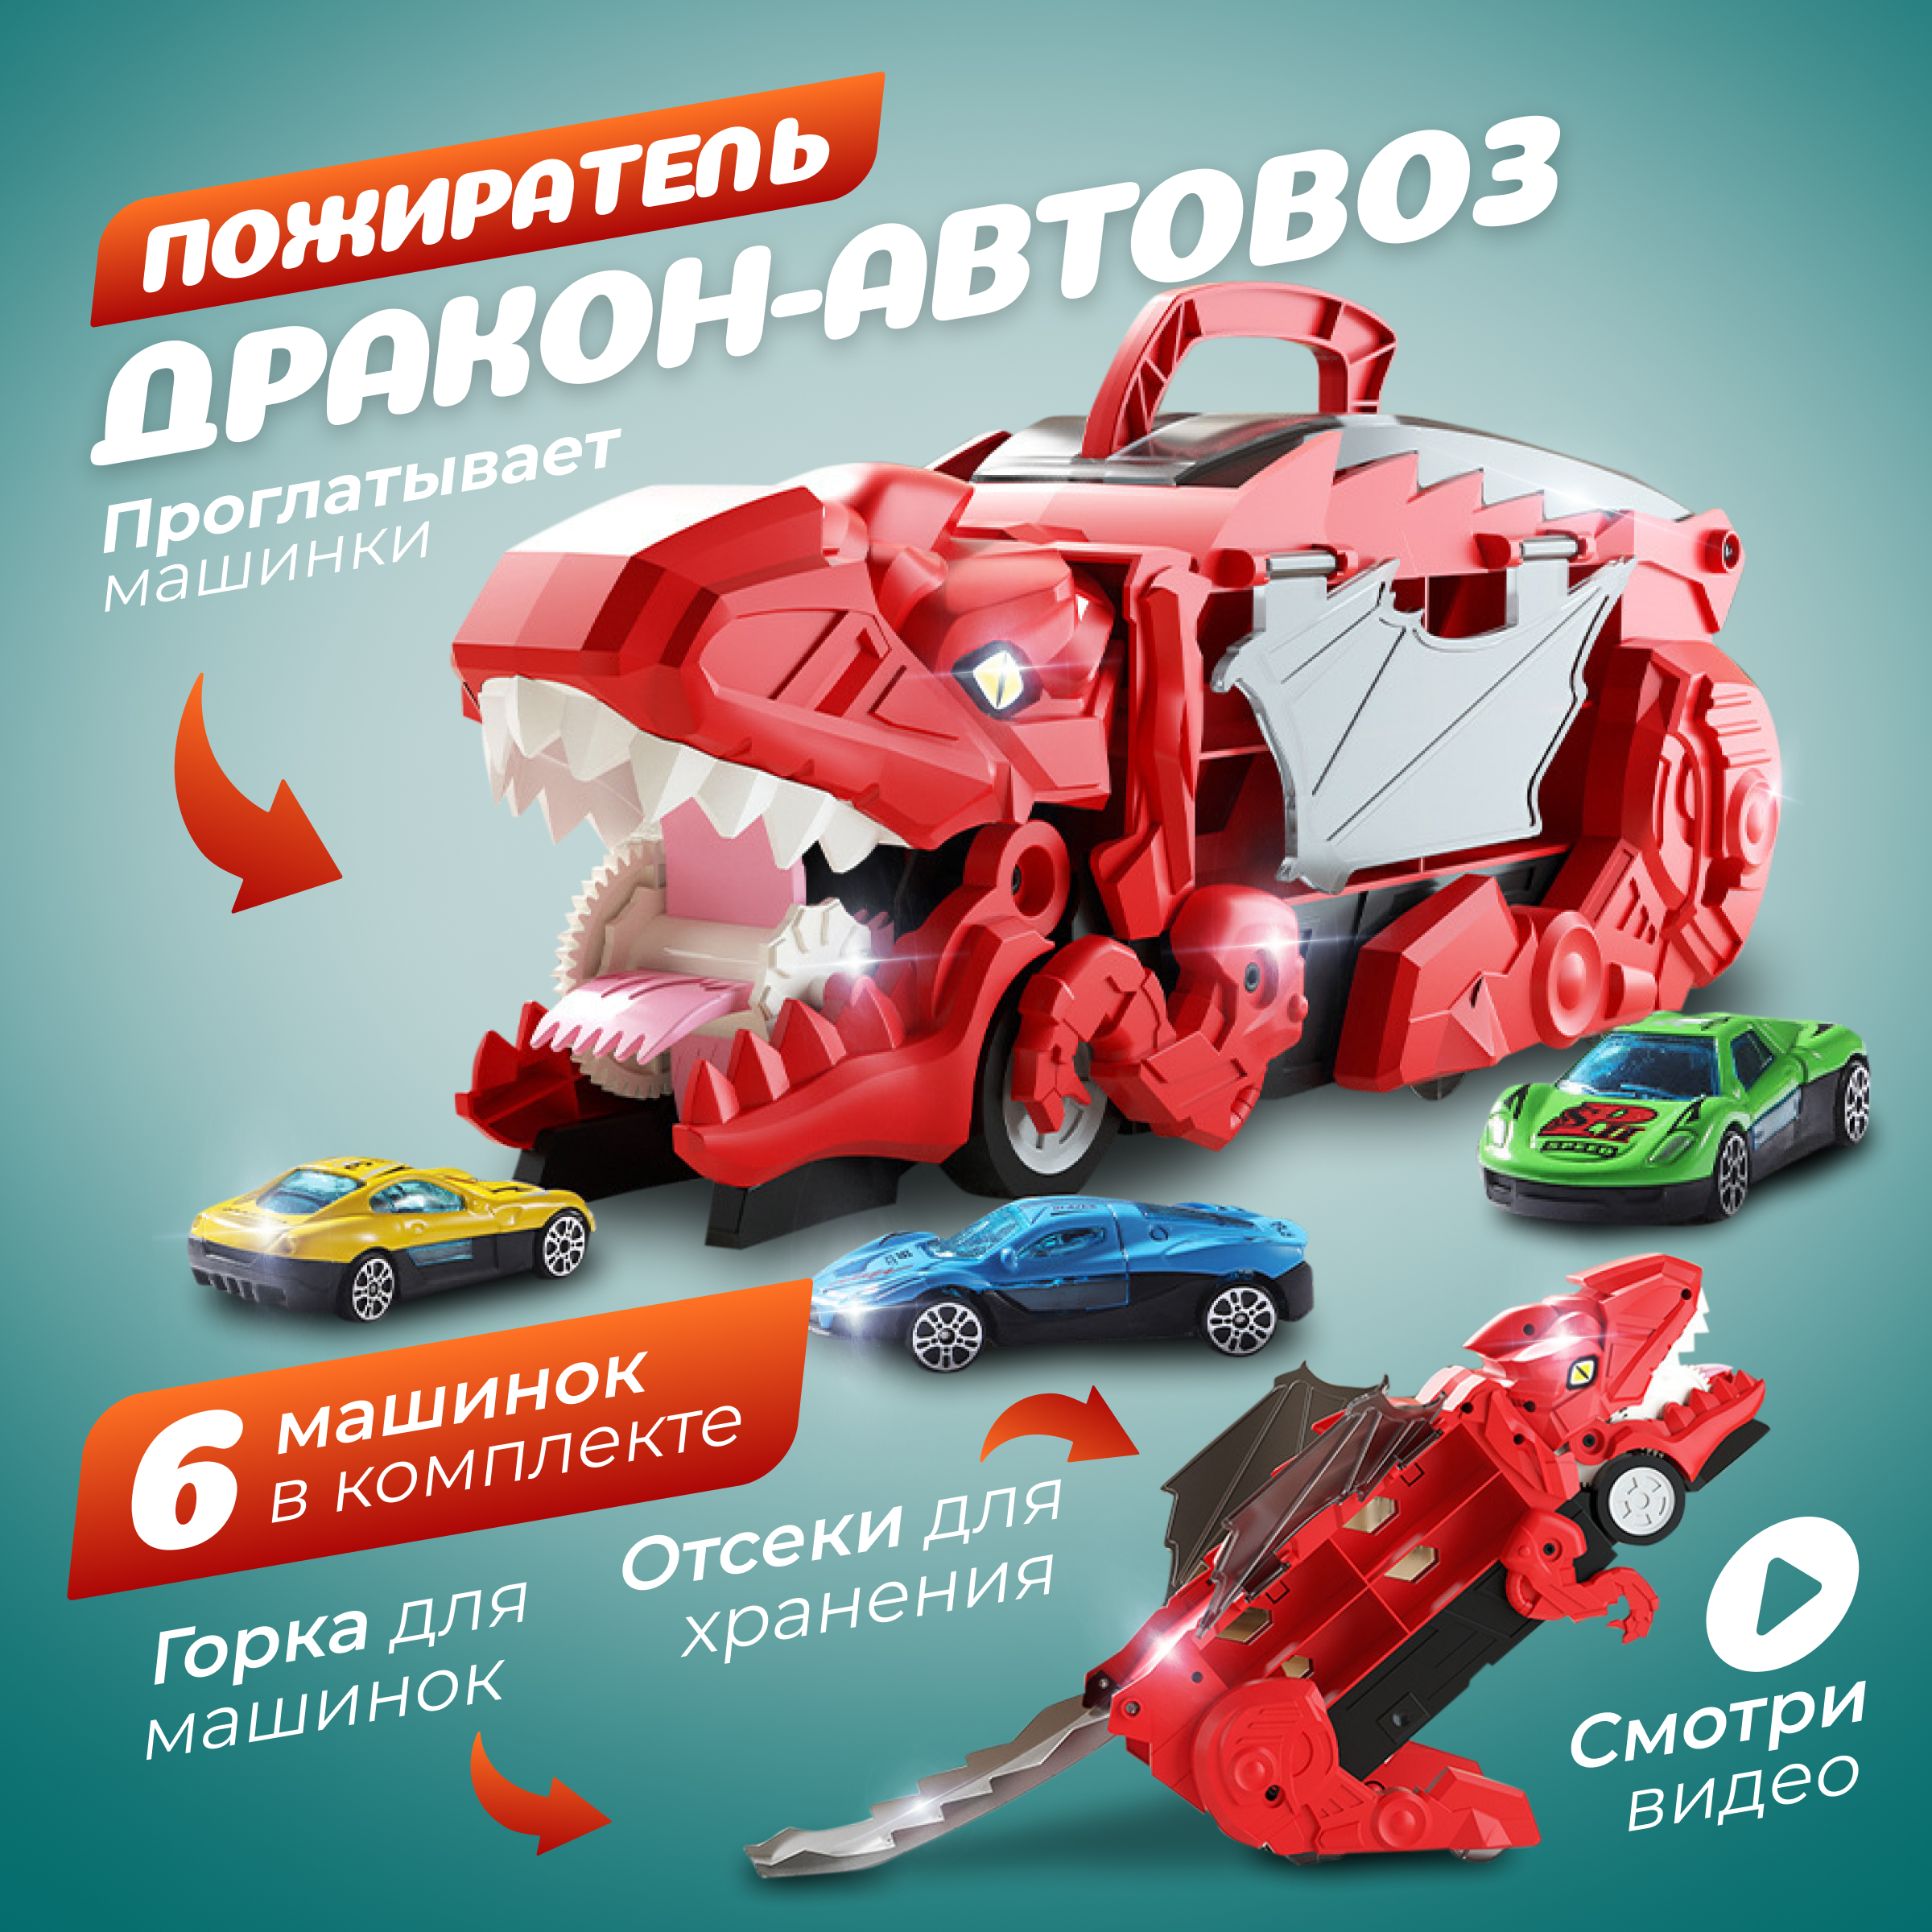 Игровой набор для мальчиков Дракон Автовоз трамплин с 6 металлическими машинками красный